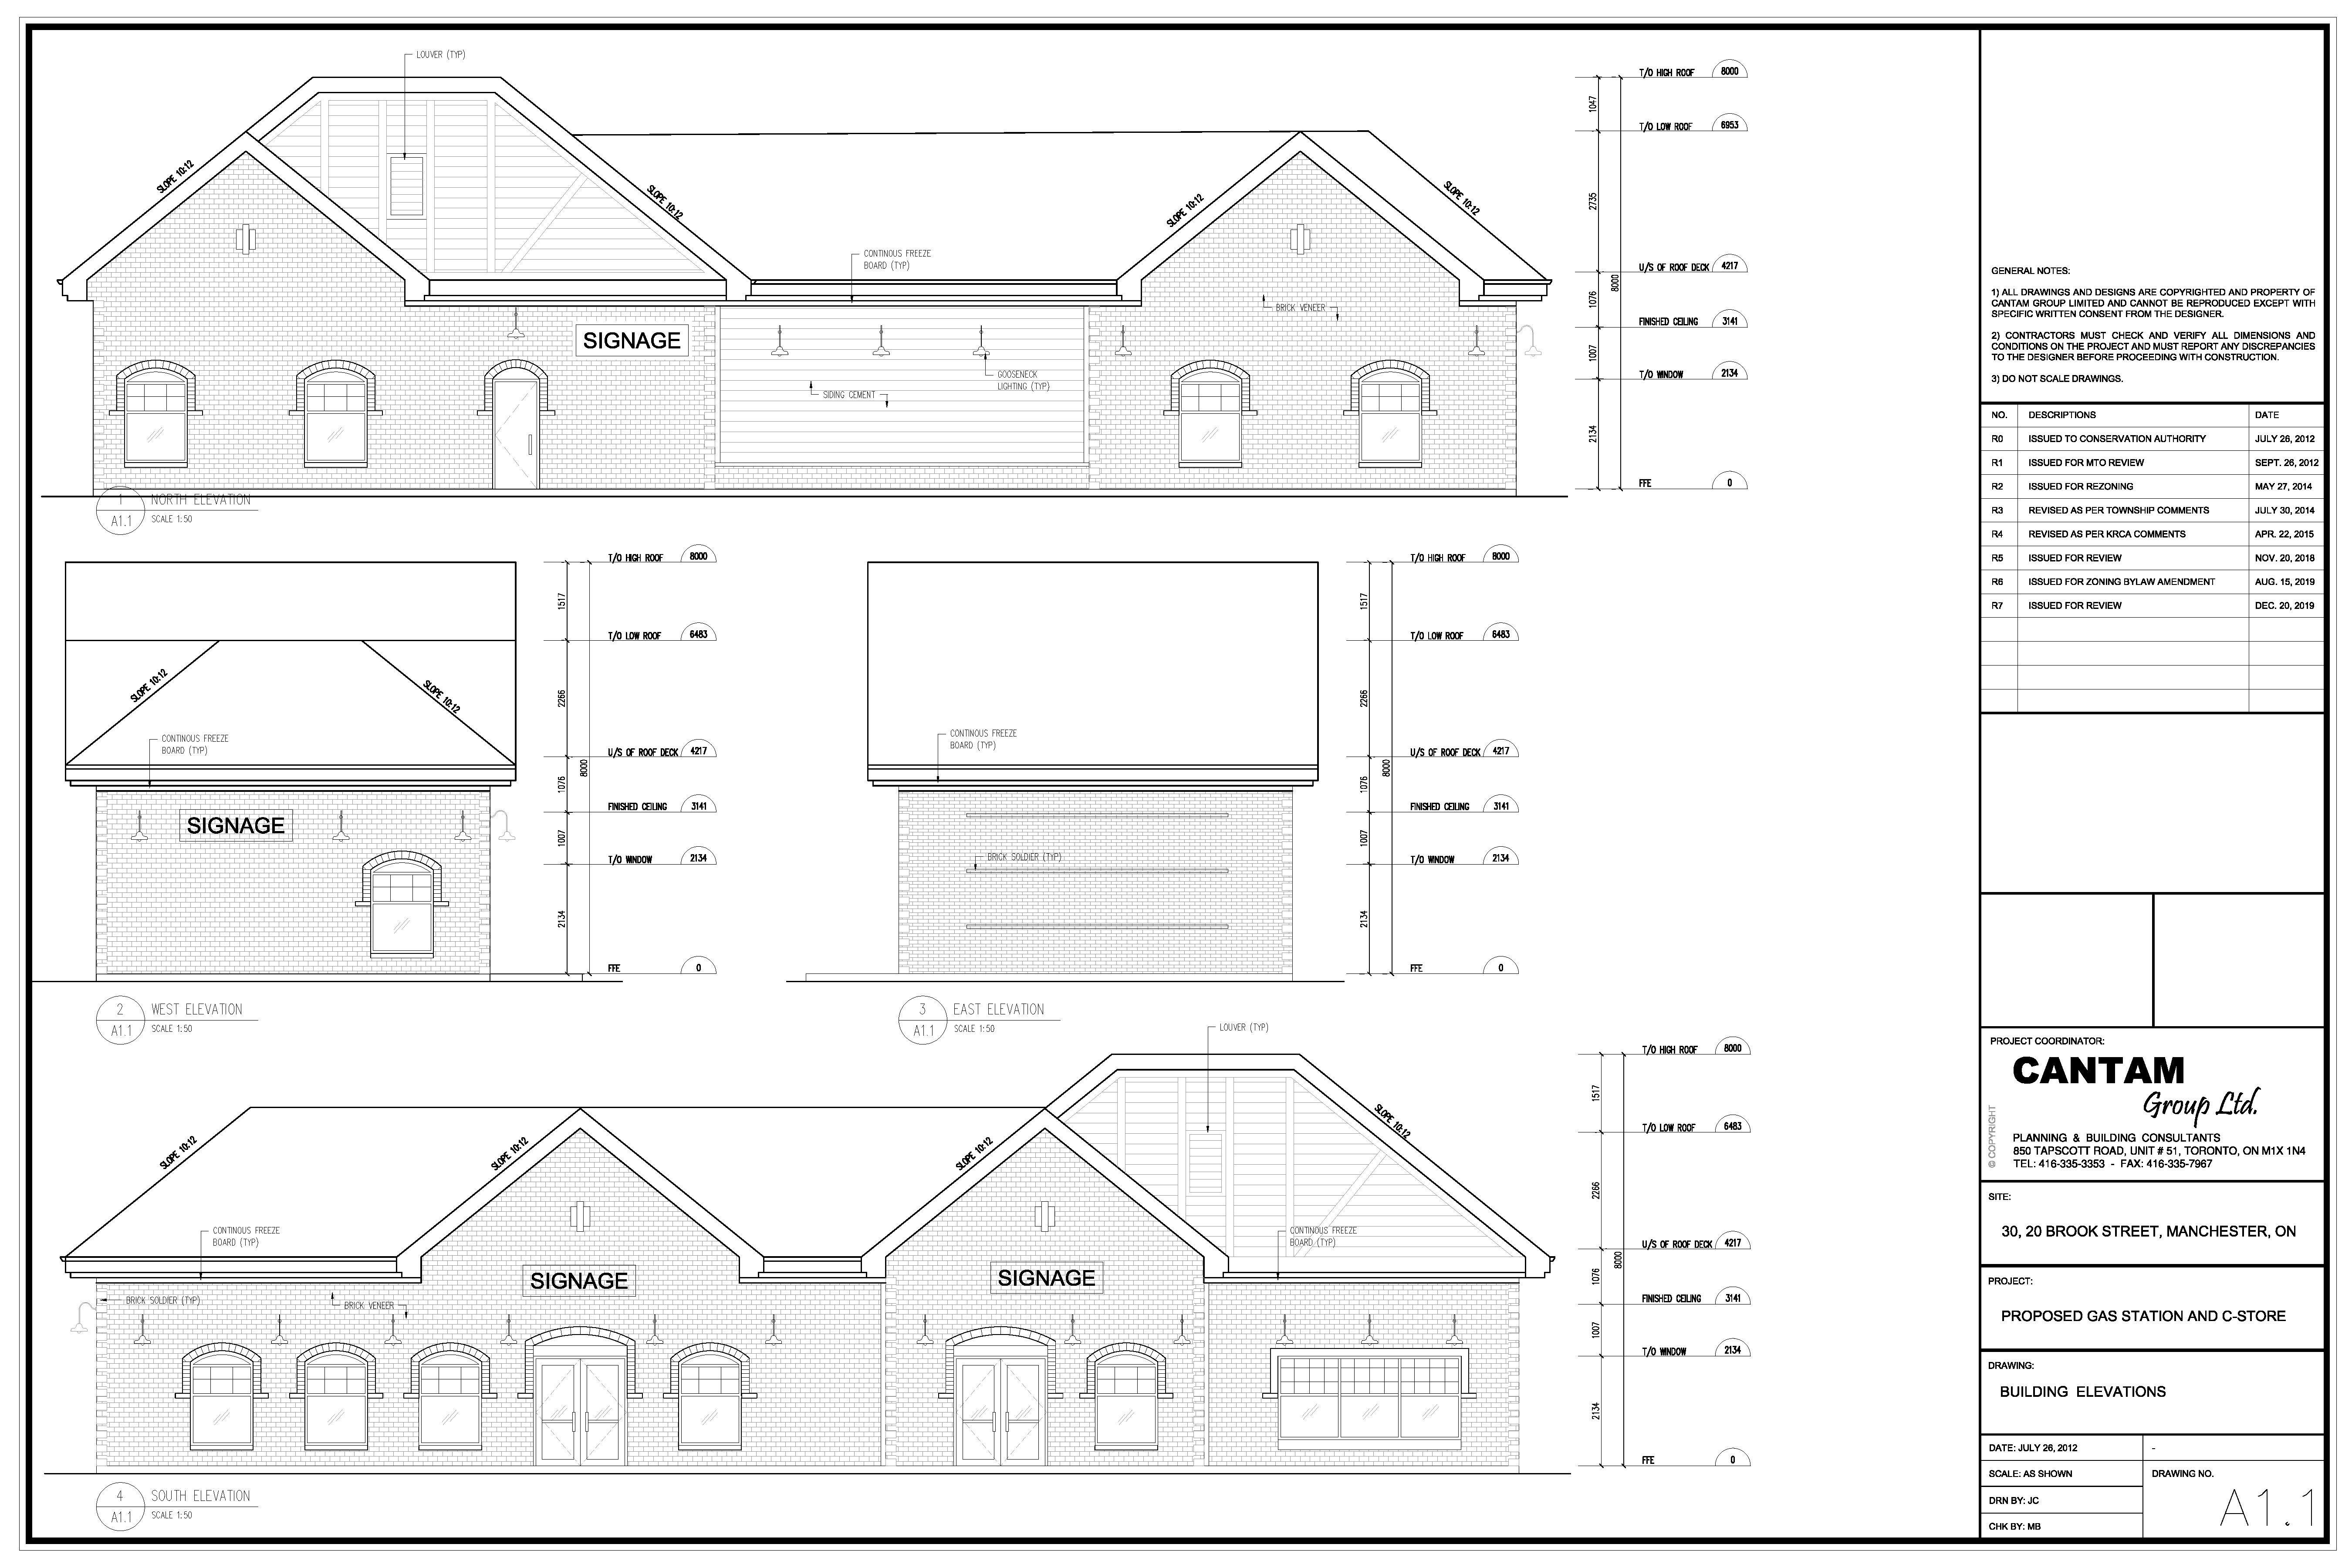 Proposed Building Elevation Drawings.jpg